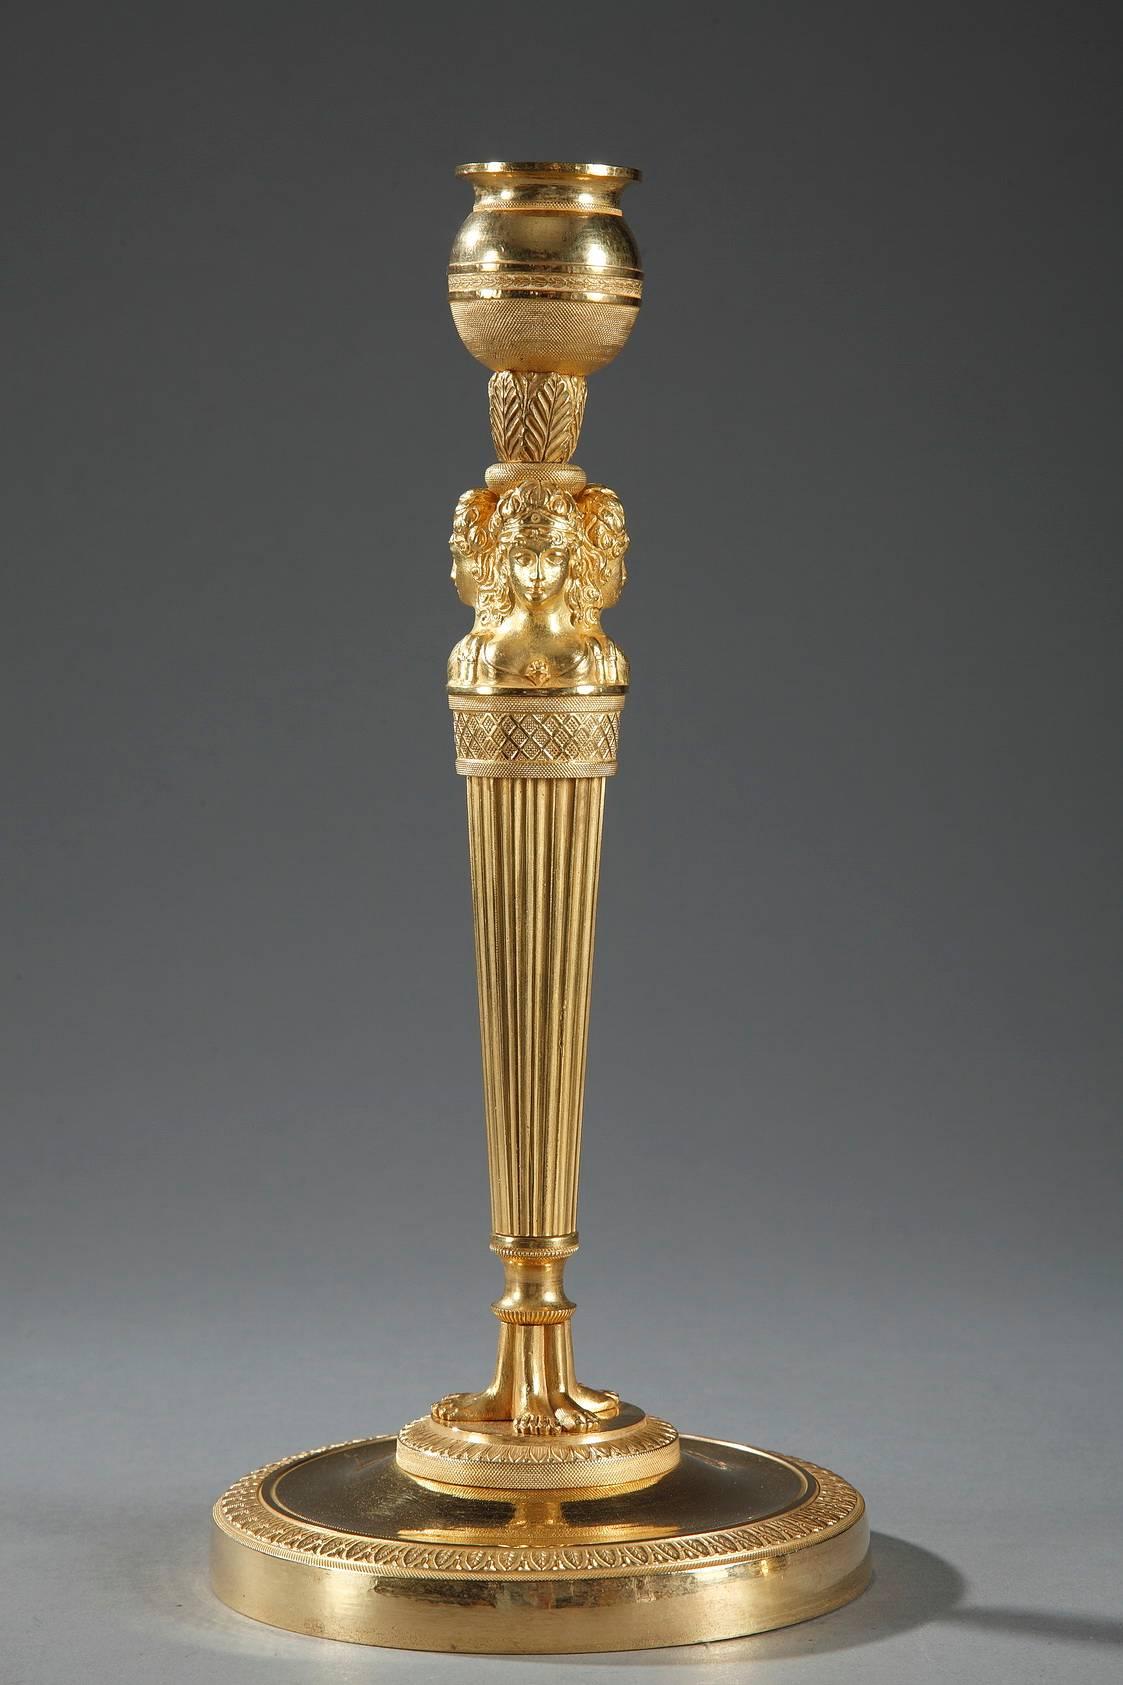 Paar vergoldete und skulptierte Bronzeleuchter aus der Empirezeit. Der Sockel ist sehr aufwändig mit Perlen und Blattwerk modelliert. Unter dem Sockel sind drei nach außen gerichtete Frauenbüsten zu sehen, die den oberen Teil des kannelierten,